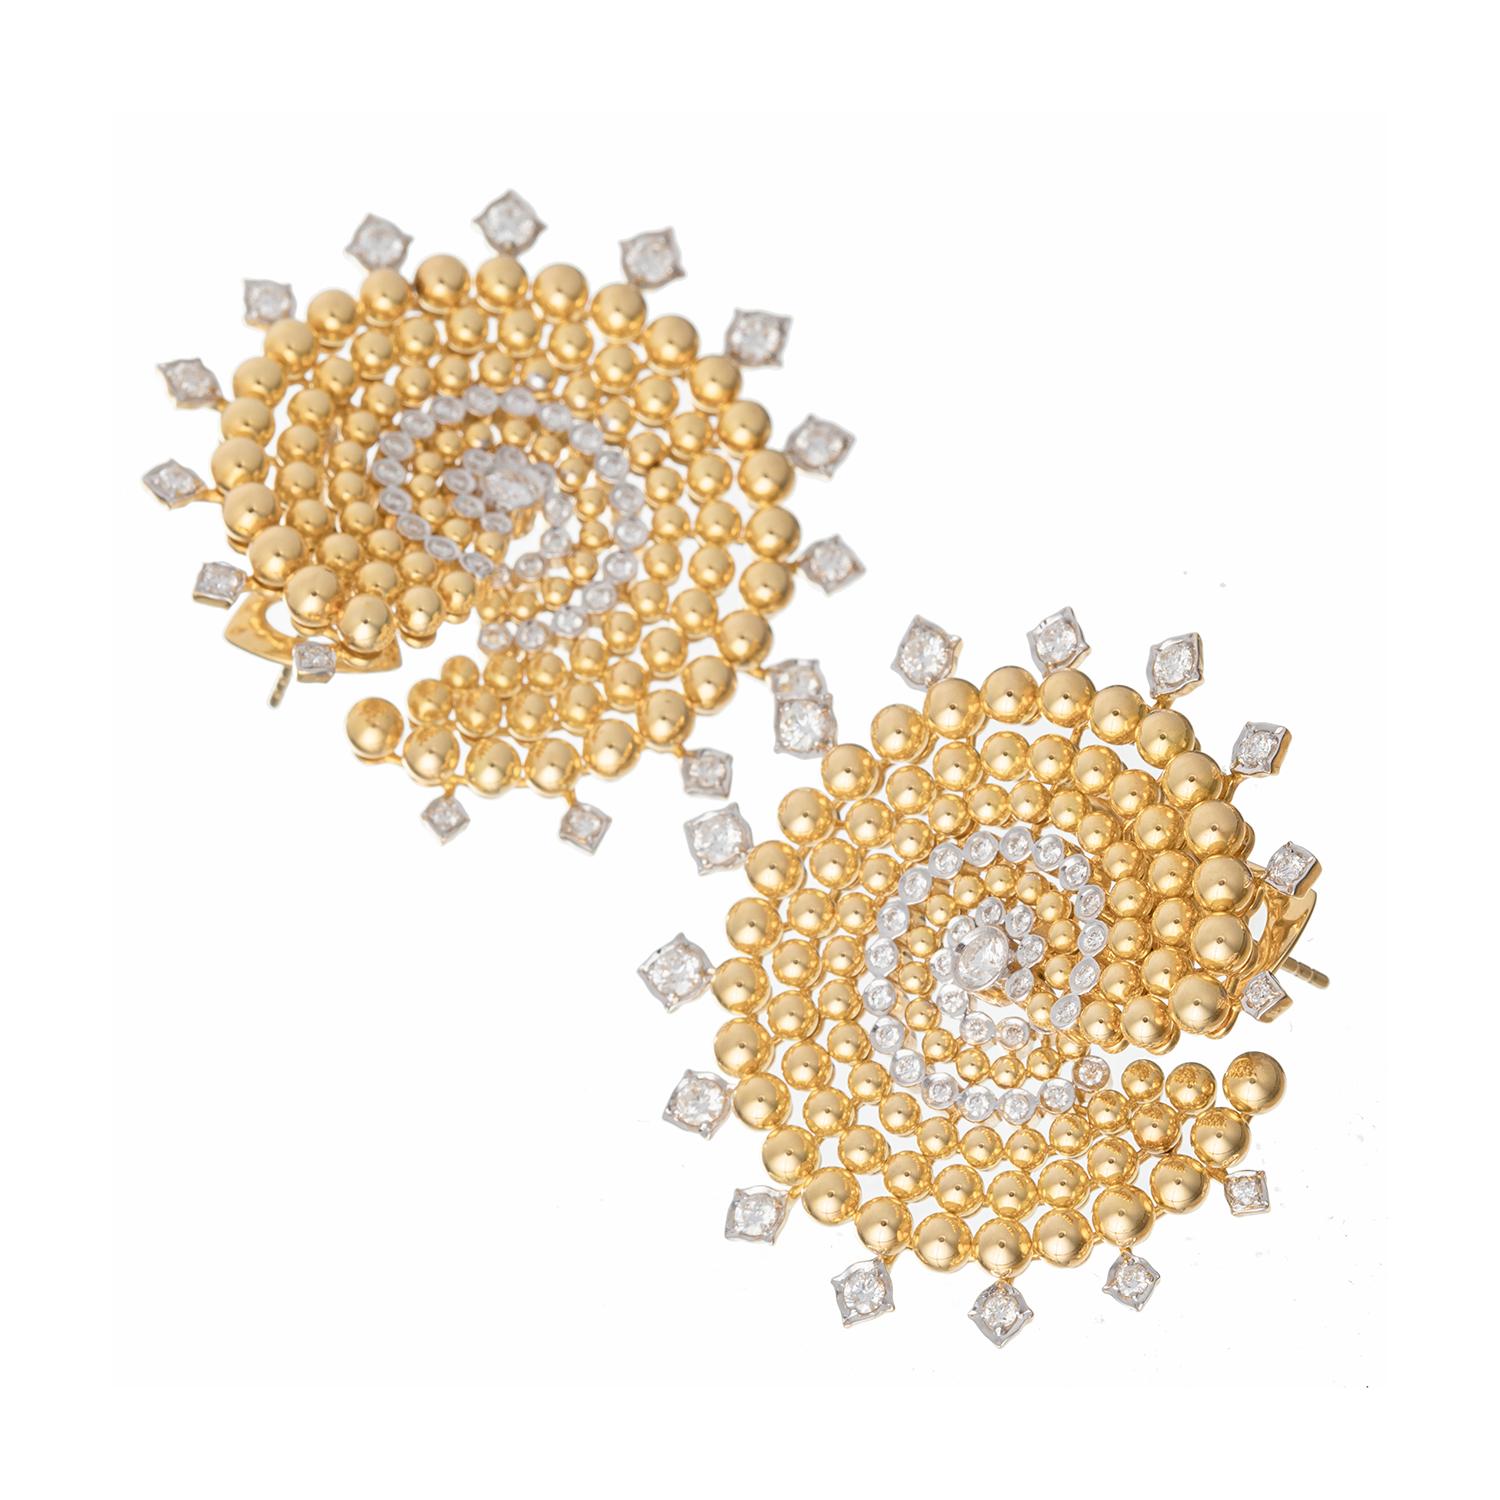 Clips d'oreilles de forme circulaire, présentant un tourbillon de perles graduelles en or jaune 18k poli avec des accents de diamants ronds de taille brillant. Chaque boucle d'oreille est ornée de quinze diamants ronds de taille brillant sur les